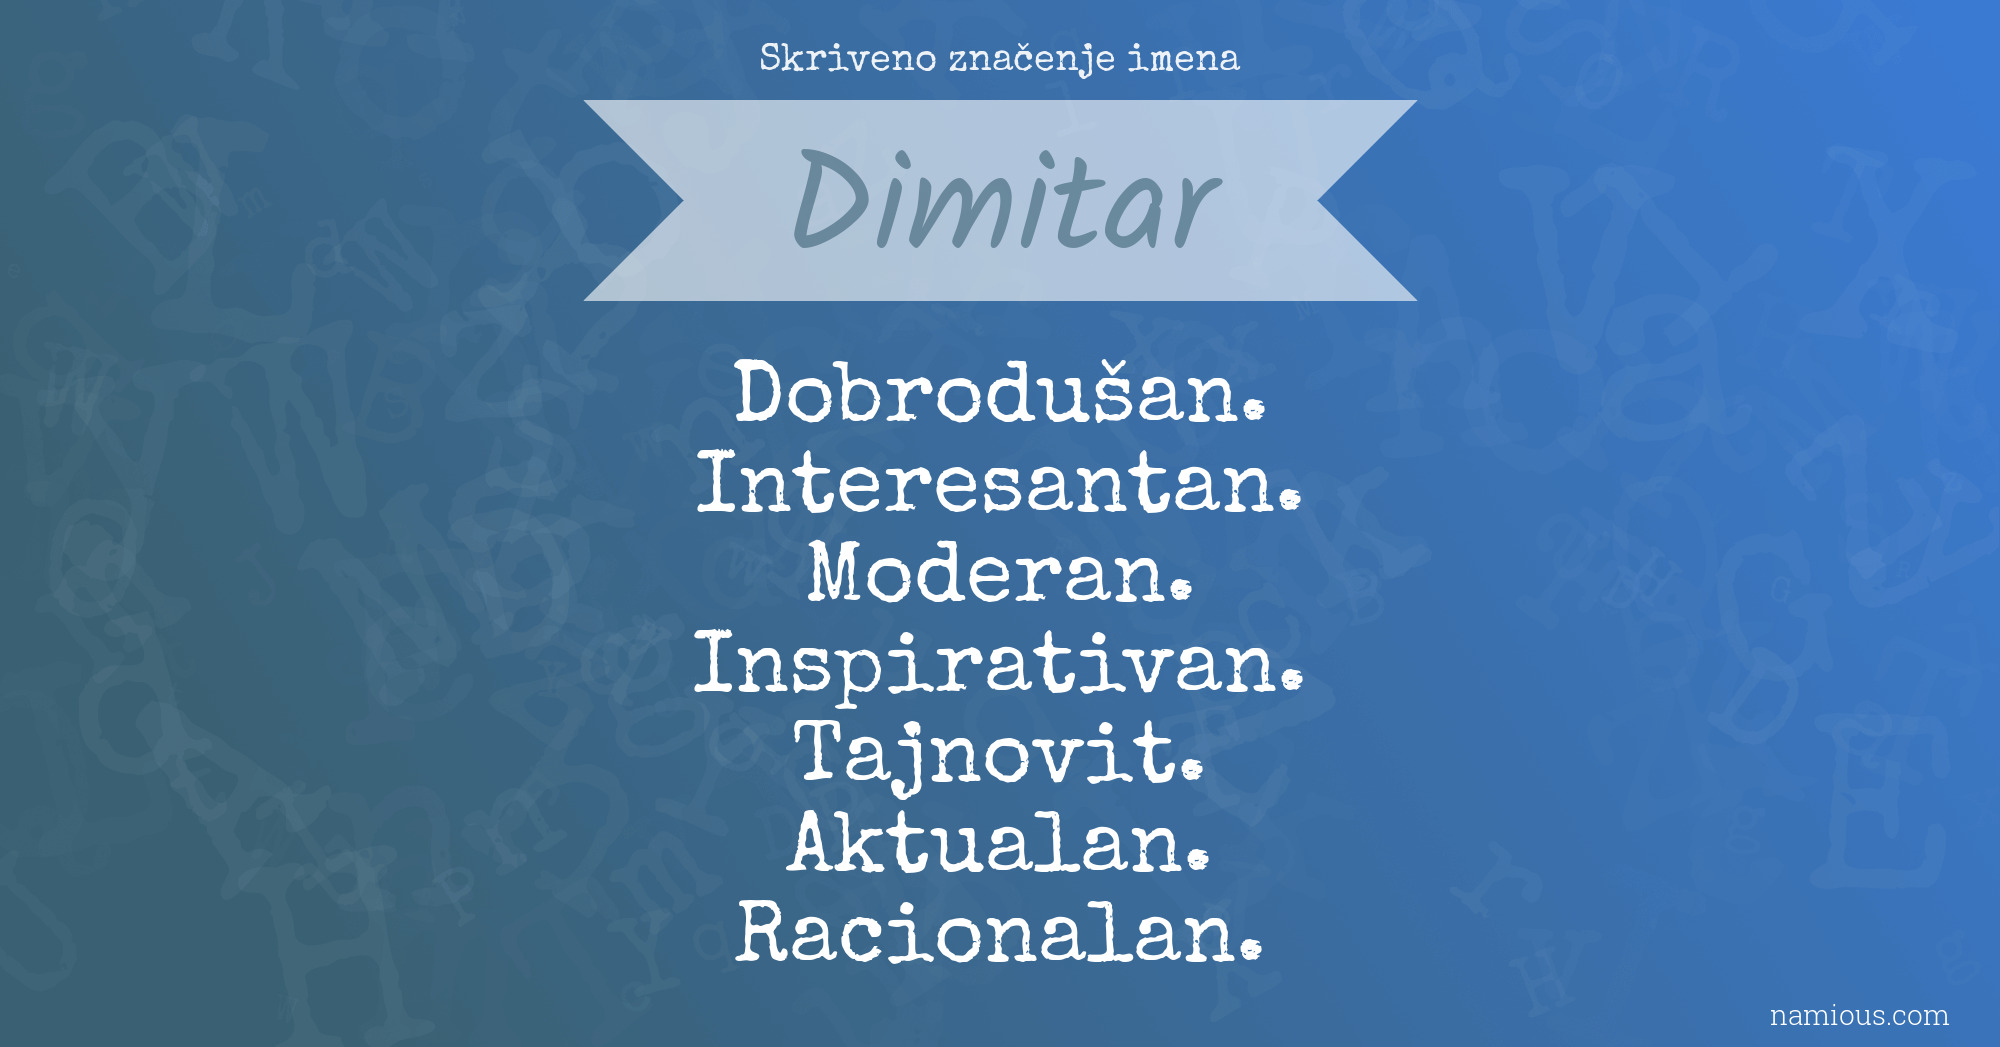 Skriveno značenje imena Dimitar